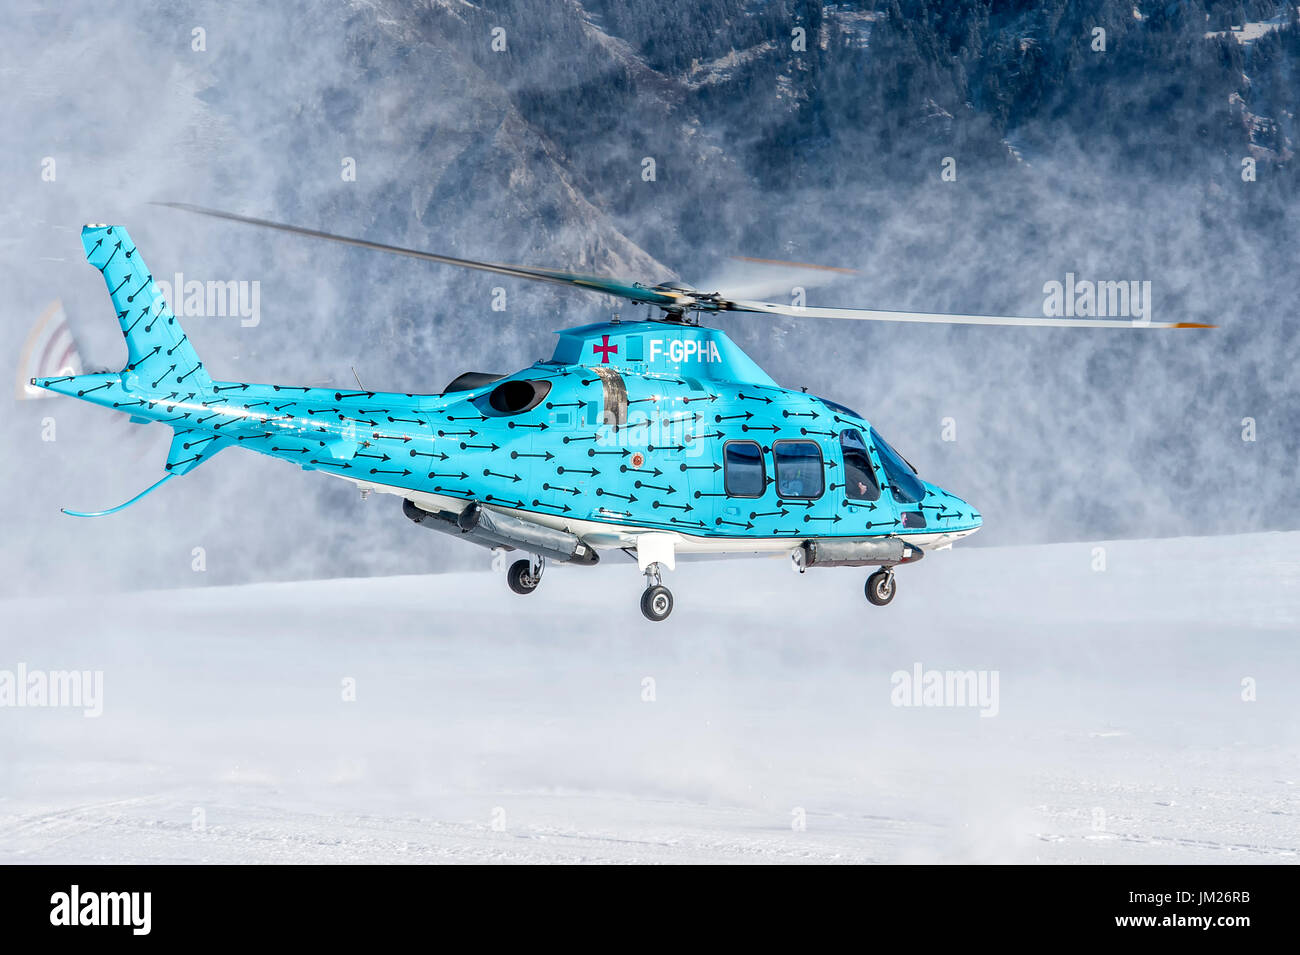 COURCHEVEL, Francia - 25 febbraio 2017 durante la vacanza invernale, gli sciatori arriva a Courchevel Altiport con Agusta A109 F-GPHA, azzurro elicottero Foto Stock